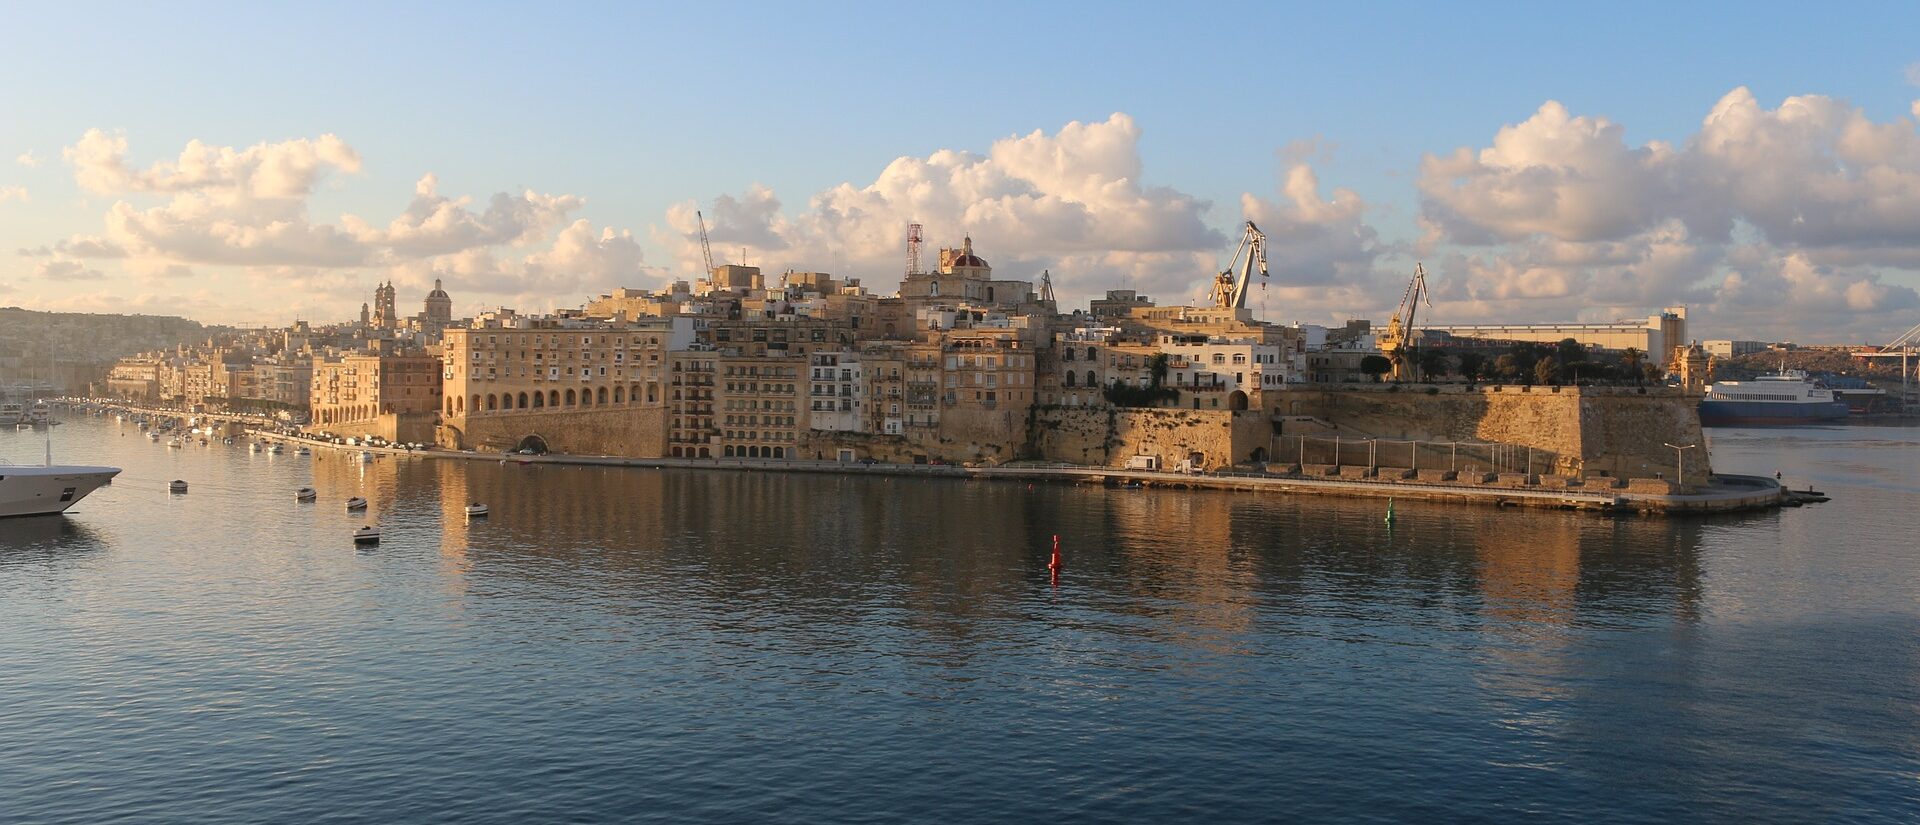 La Valette, la capitale de Malte, attend le pape François | © Pixabay